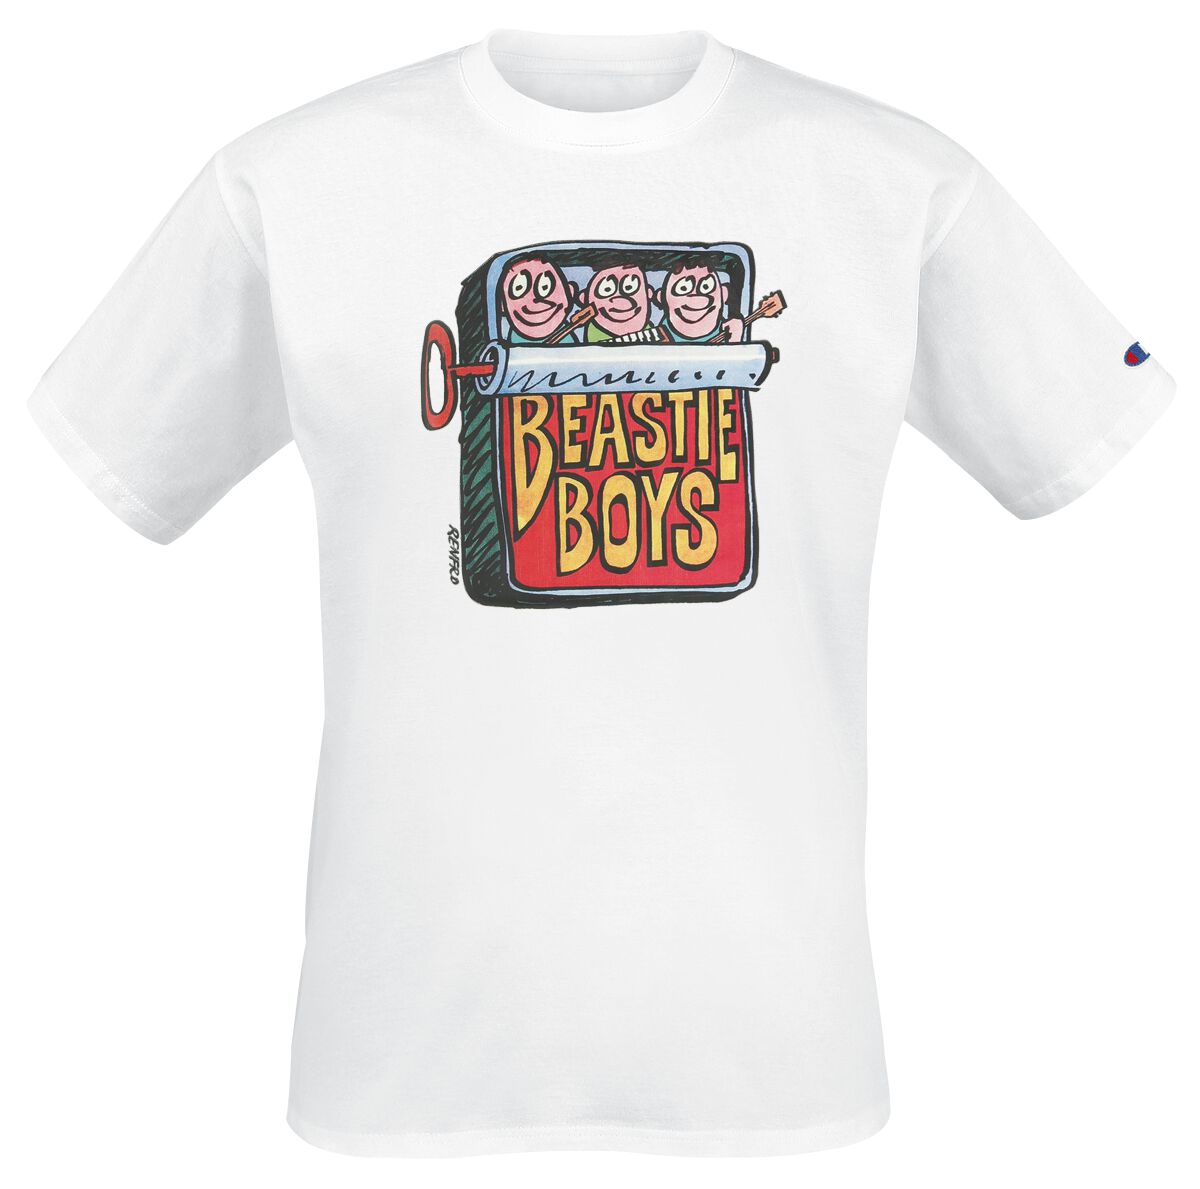 Champion T-Shirt - Champion x Beastie Boys - Crewneck T-Shirt - S bis XXL - für Männer - Größe S - weiß